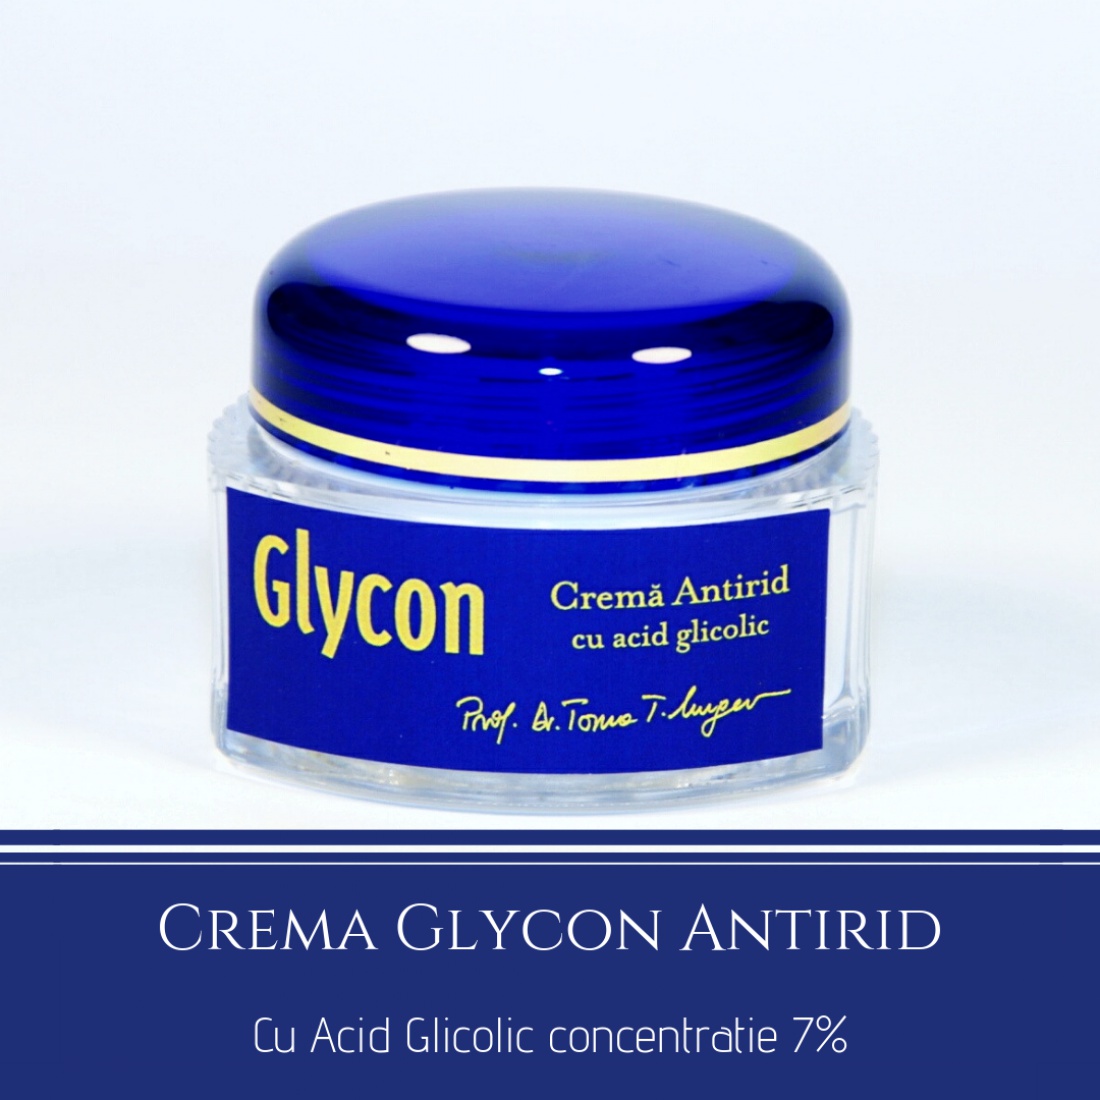 Glycon Cremă Antirid Glycon